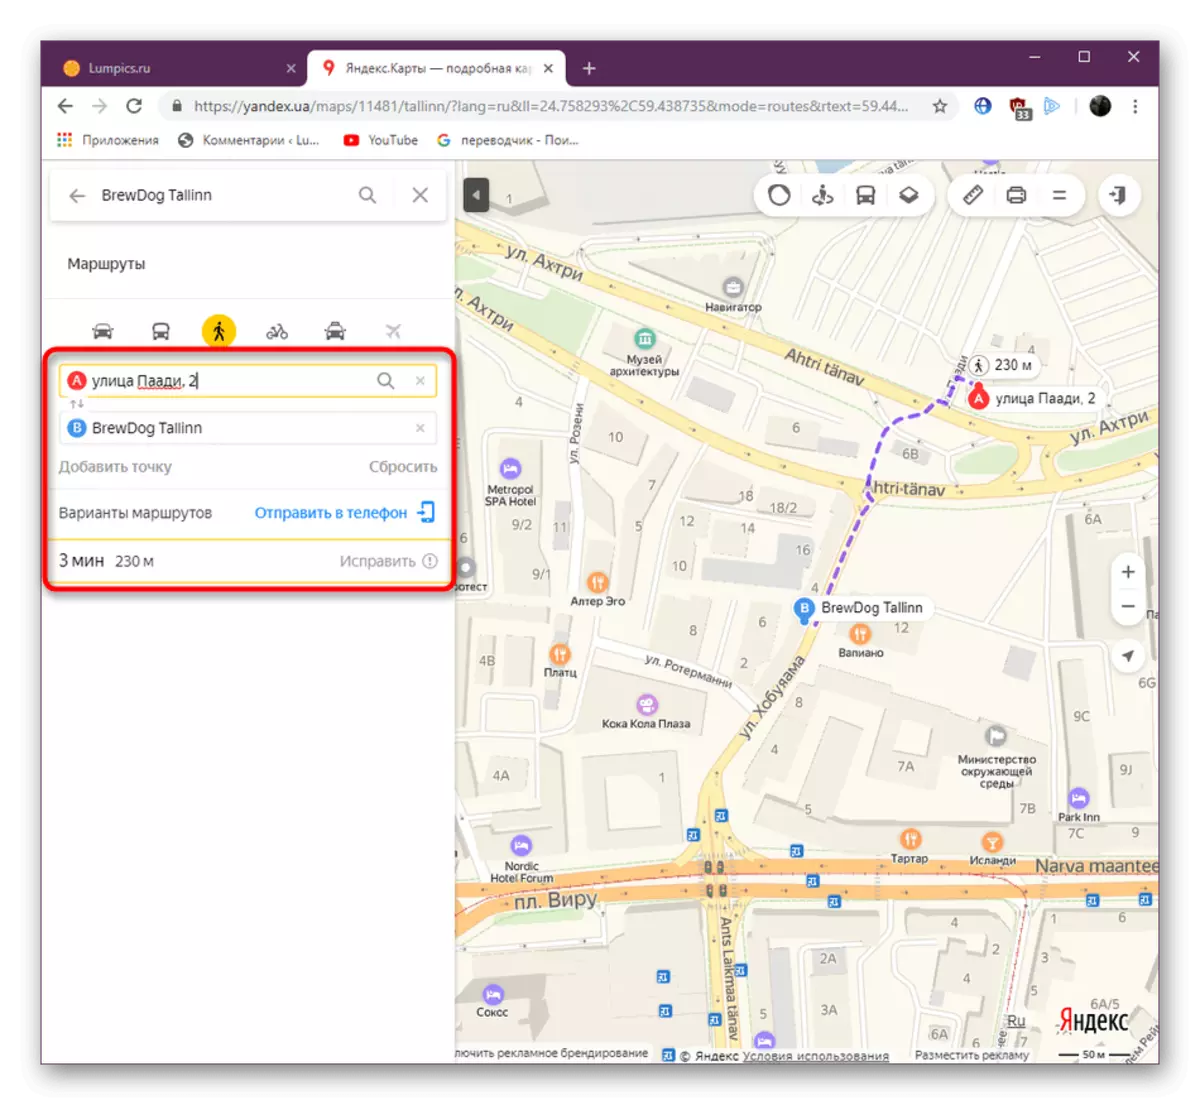 Yandex.maps वेबसाइटवर अंतर मोजण्यासाठी राउटिंग मार्ग